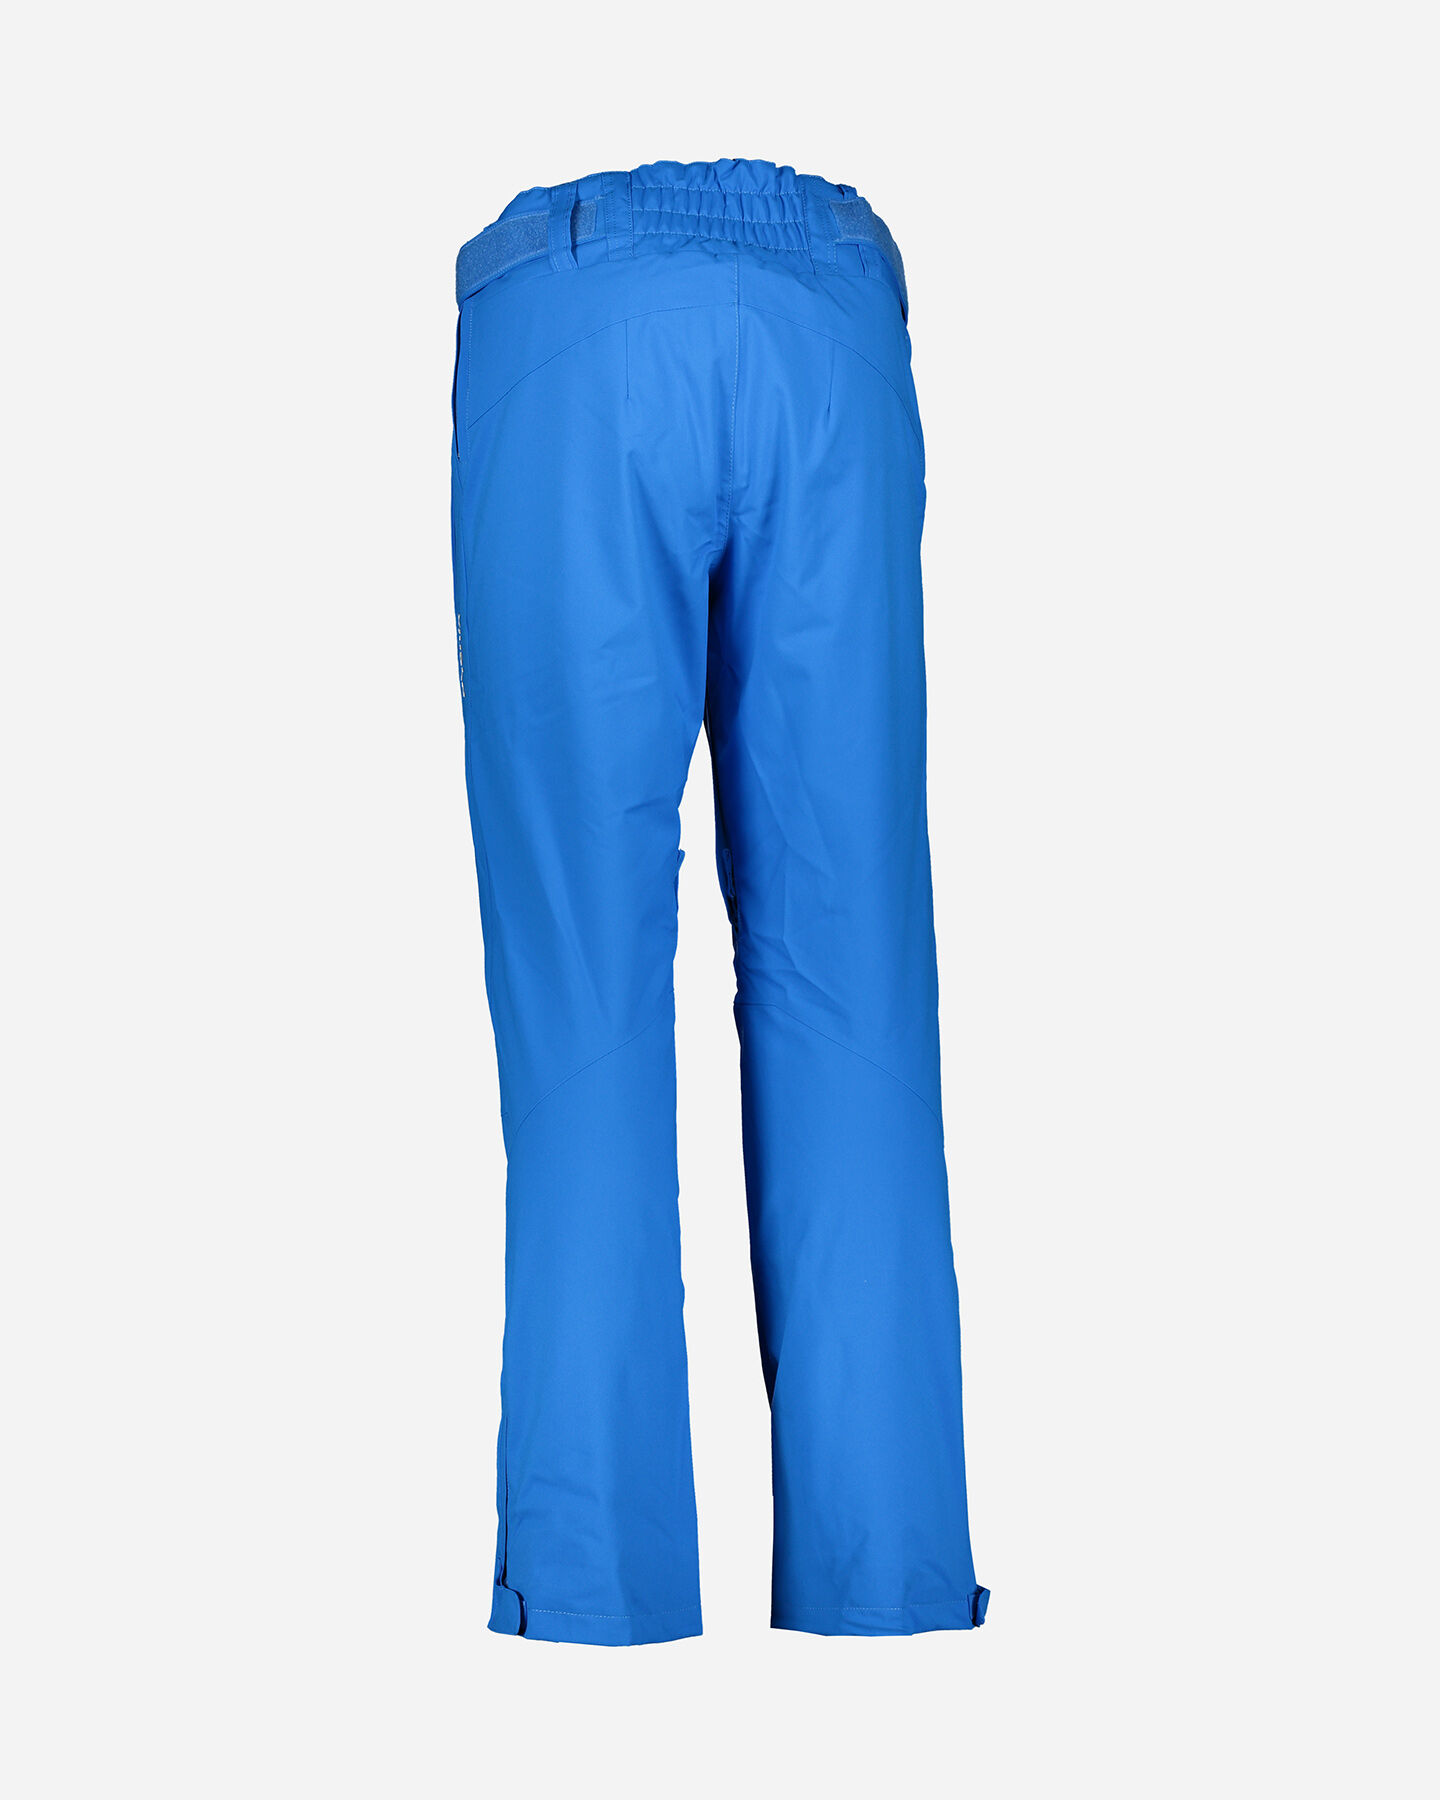  Pantalone sci PHENIX ARROW M S4071225 scatto 2